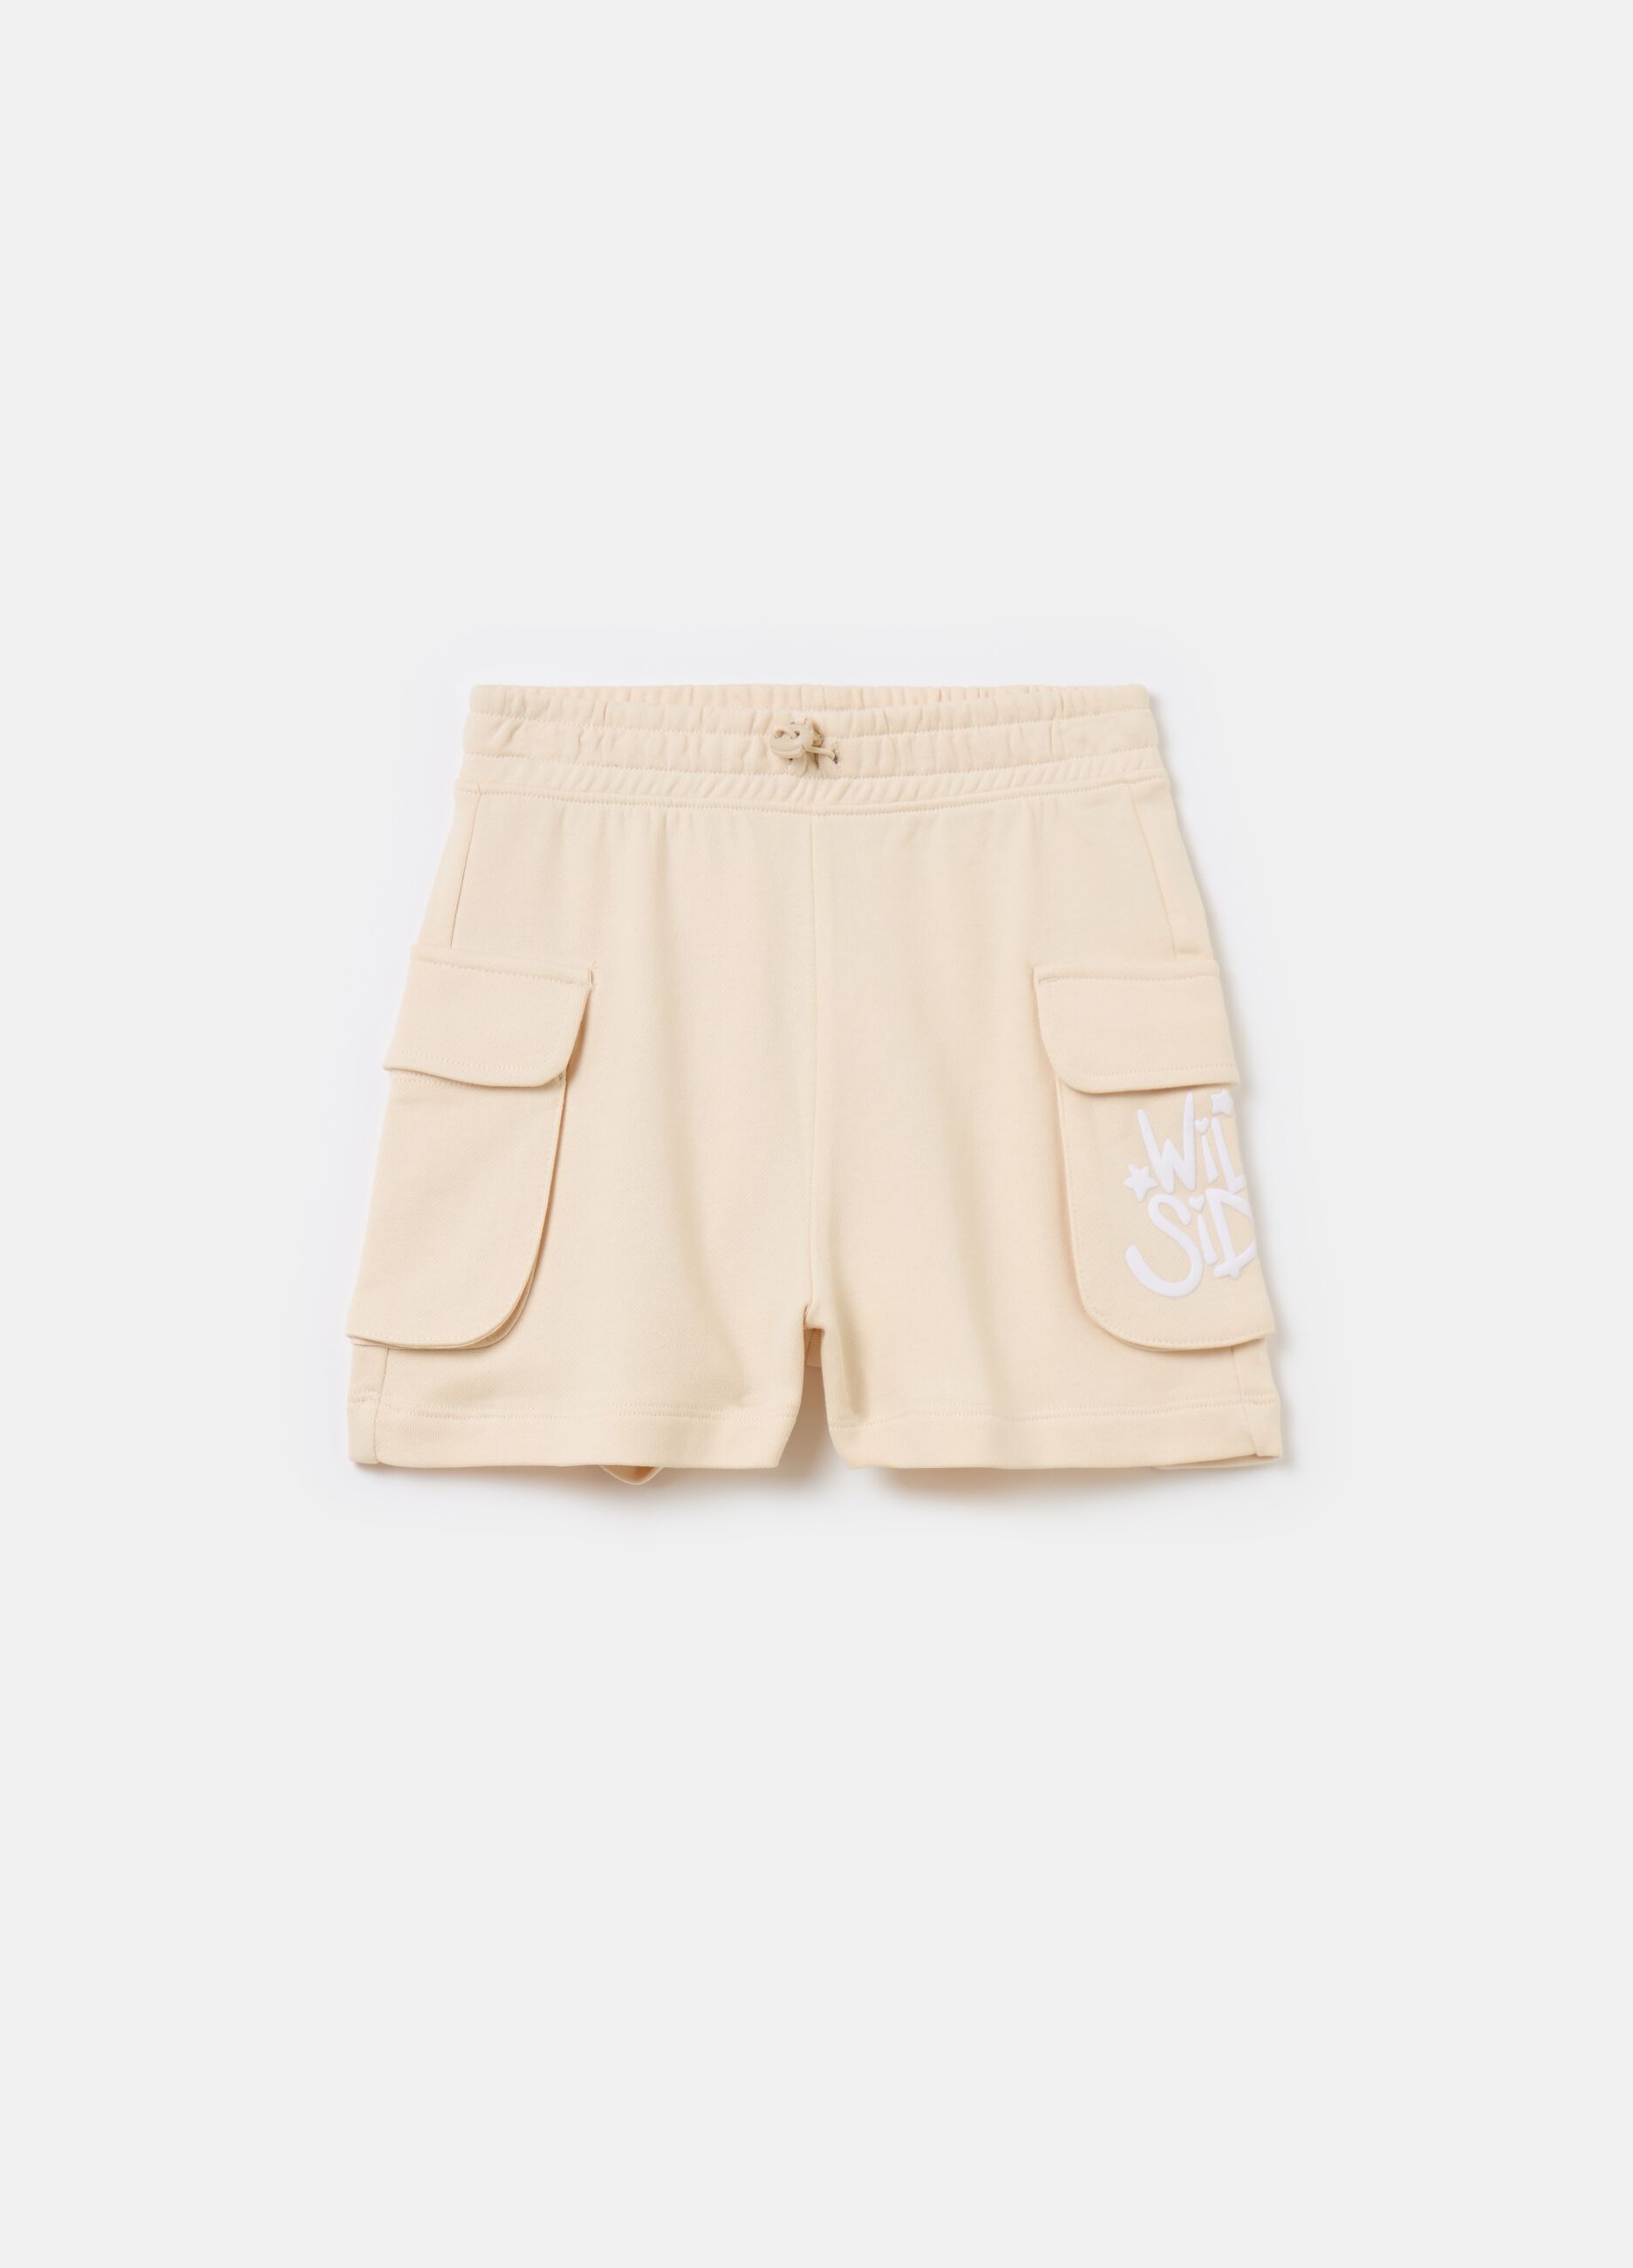 Shorts con cordón y bolsillos